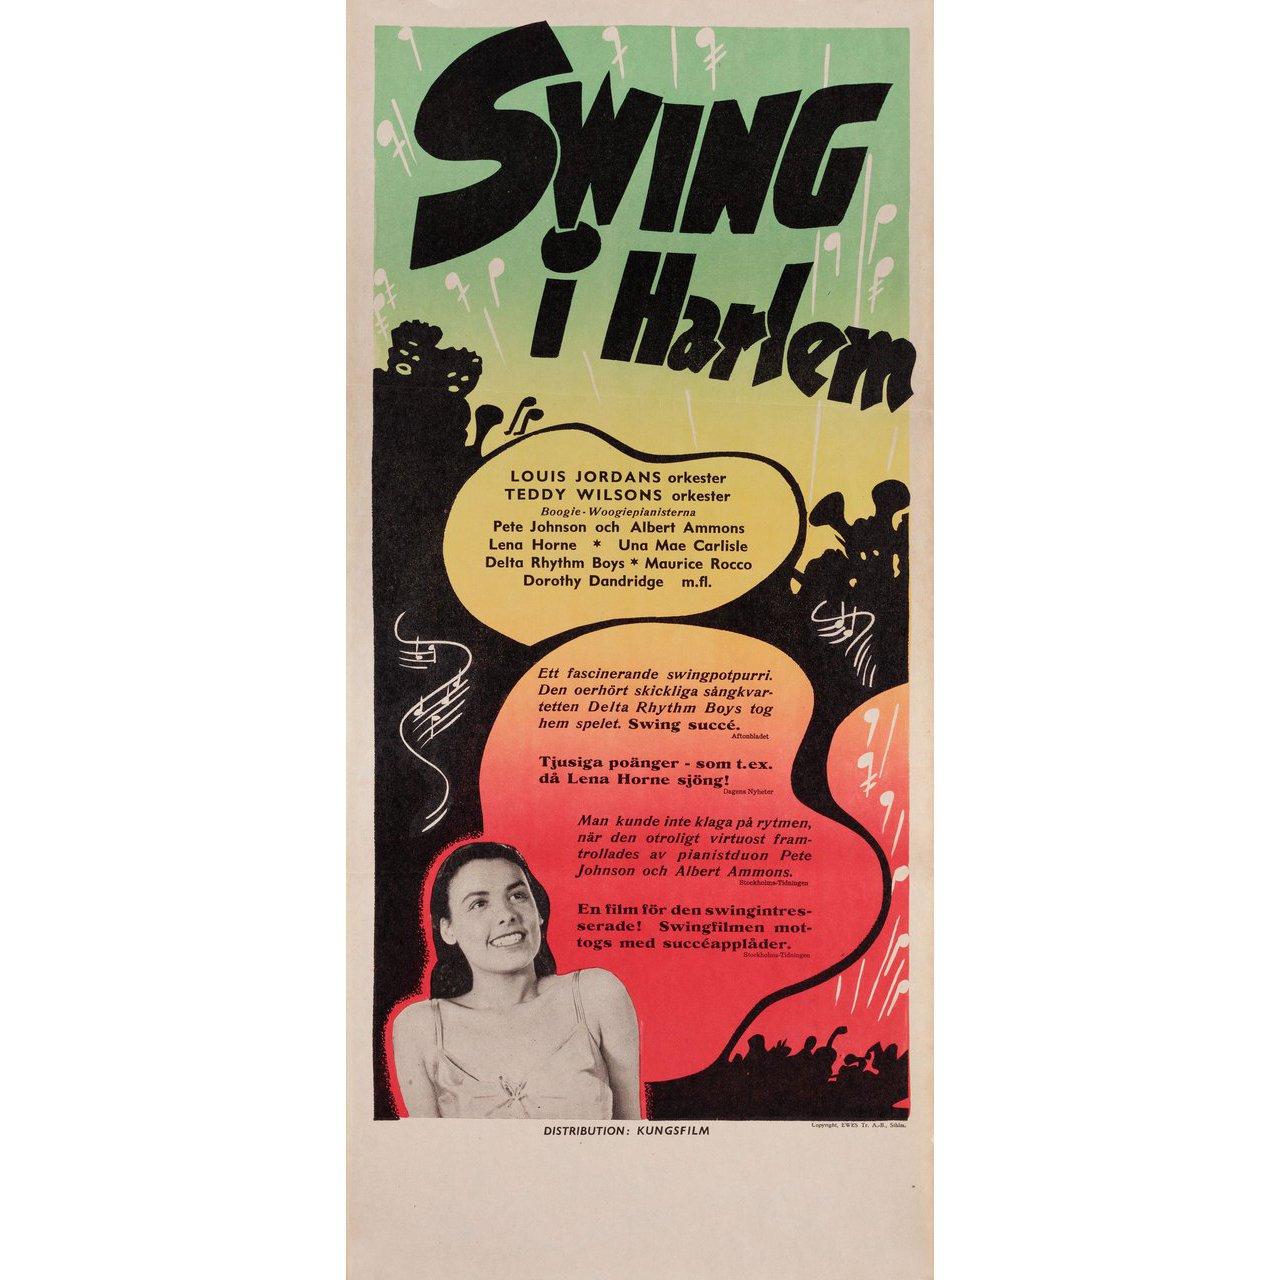 Affiche originale en stolpe suédois de 1946 pour le film Swingtime Jamboree (Swing in Harlem) réalisé par William Forest Crouch avec Stepin Fetchit / Albert Ammons / Delta Rhythm Boys. Très bon état, plié. De nombreuses affiches originales ont été